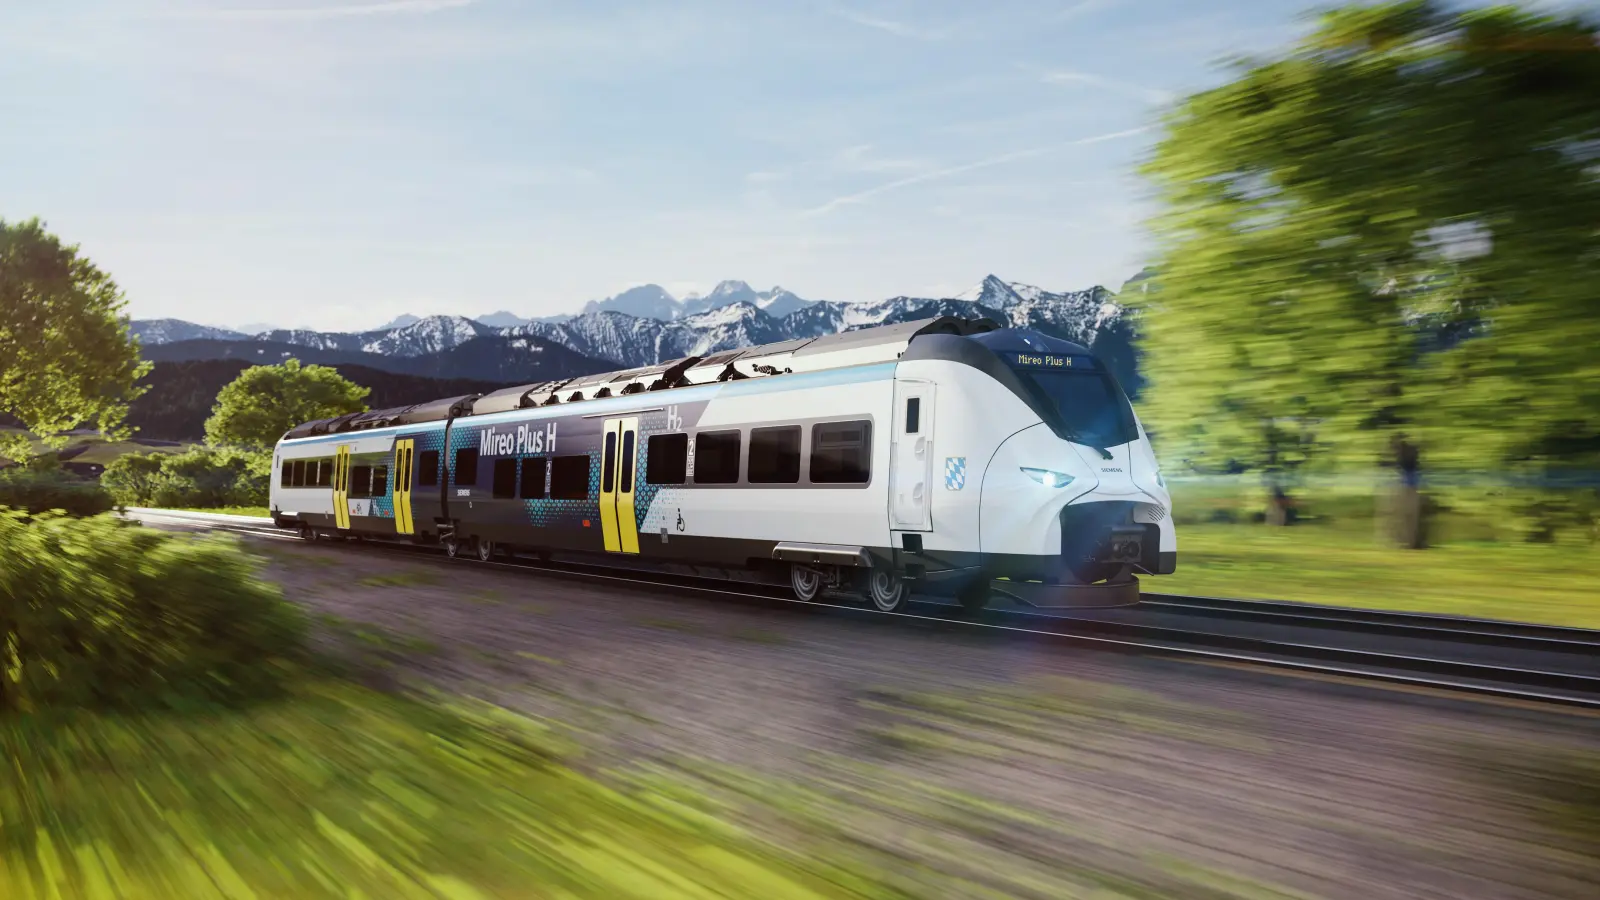 Der Zug ist eine Entwicklung von Siemens Mobility. Auf dem Dach befindet sich ein Wasserstofftank, der zwei Brennstoffzellen antreibt. (Grafik: Siemens Mobility GmbH)